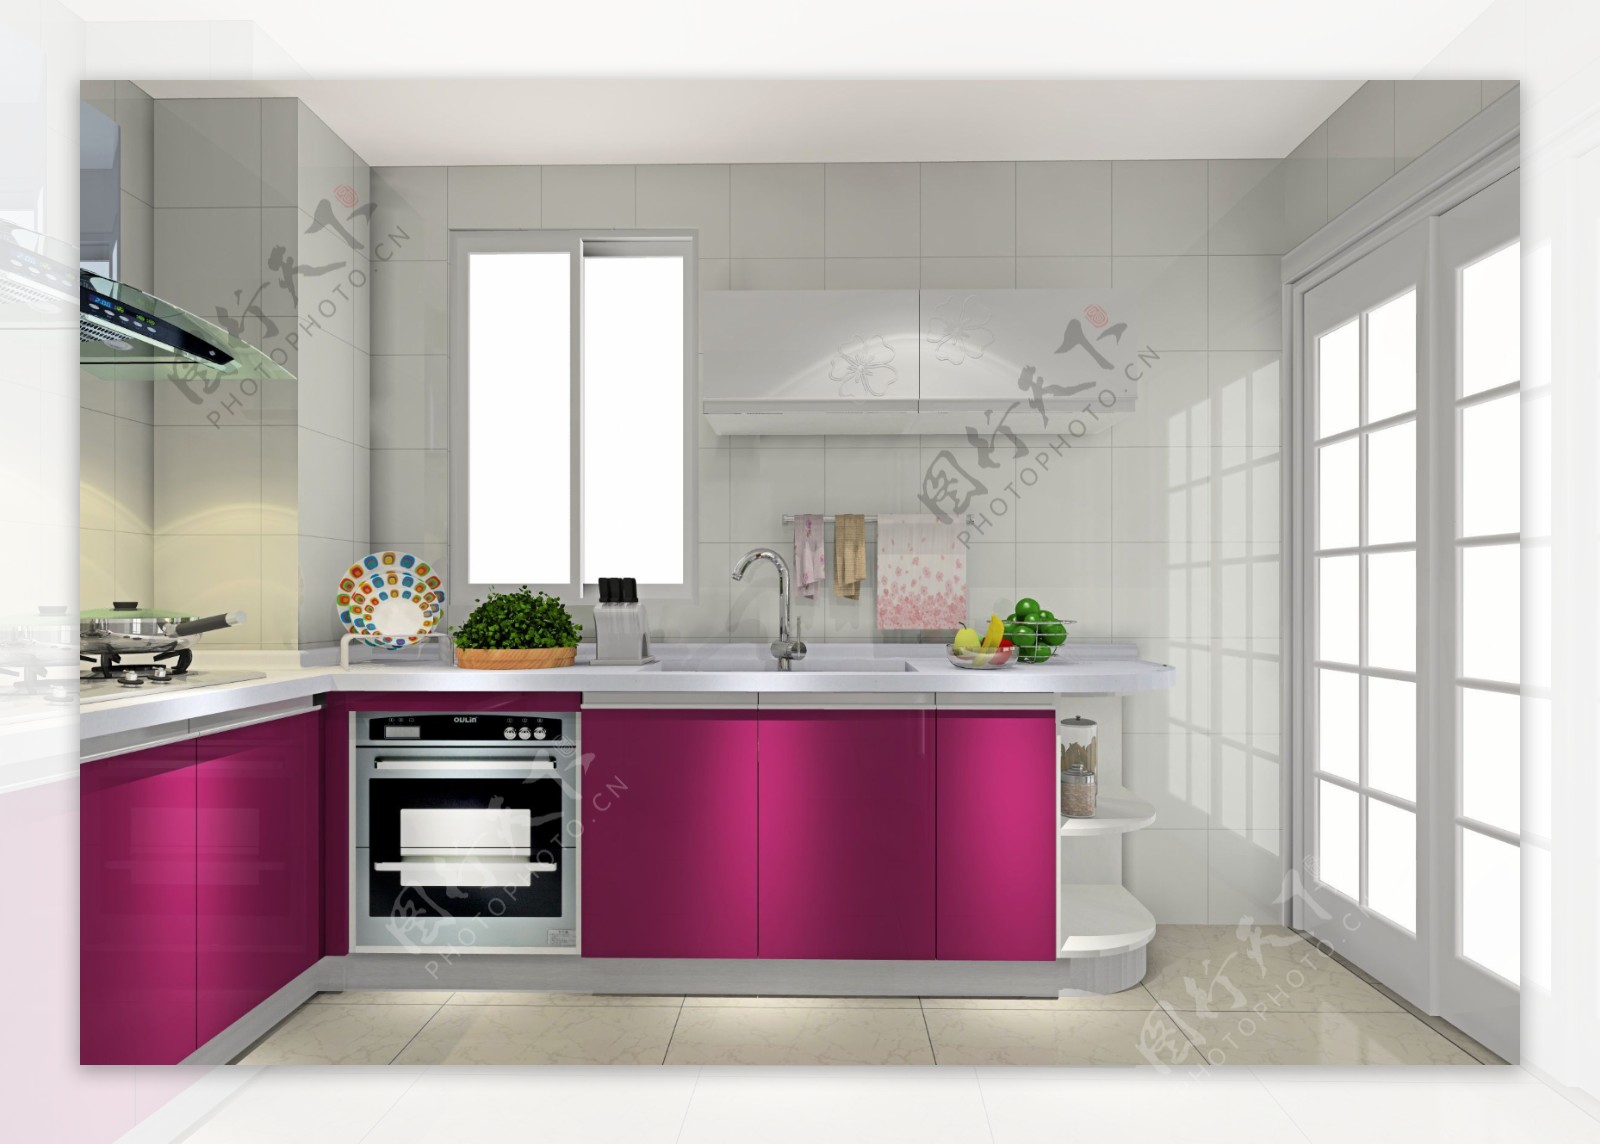 紫色简约小厨房